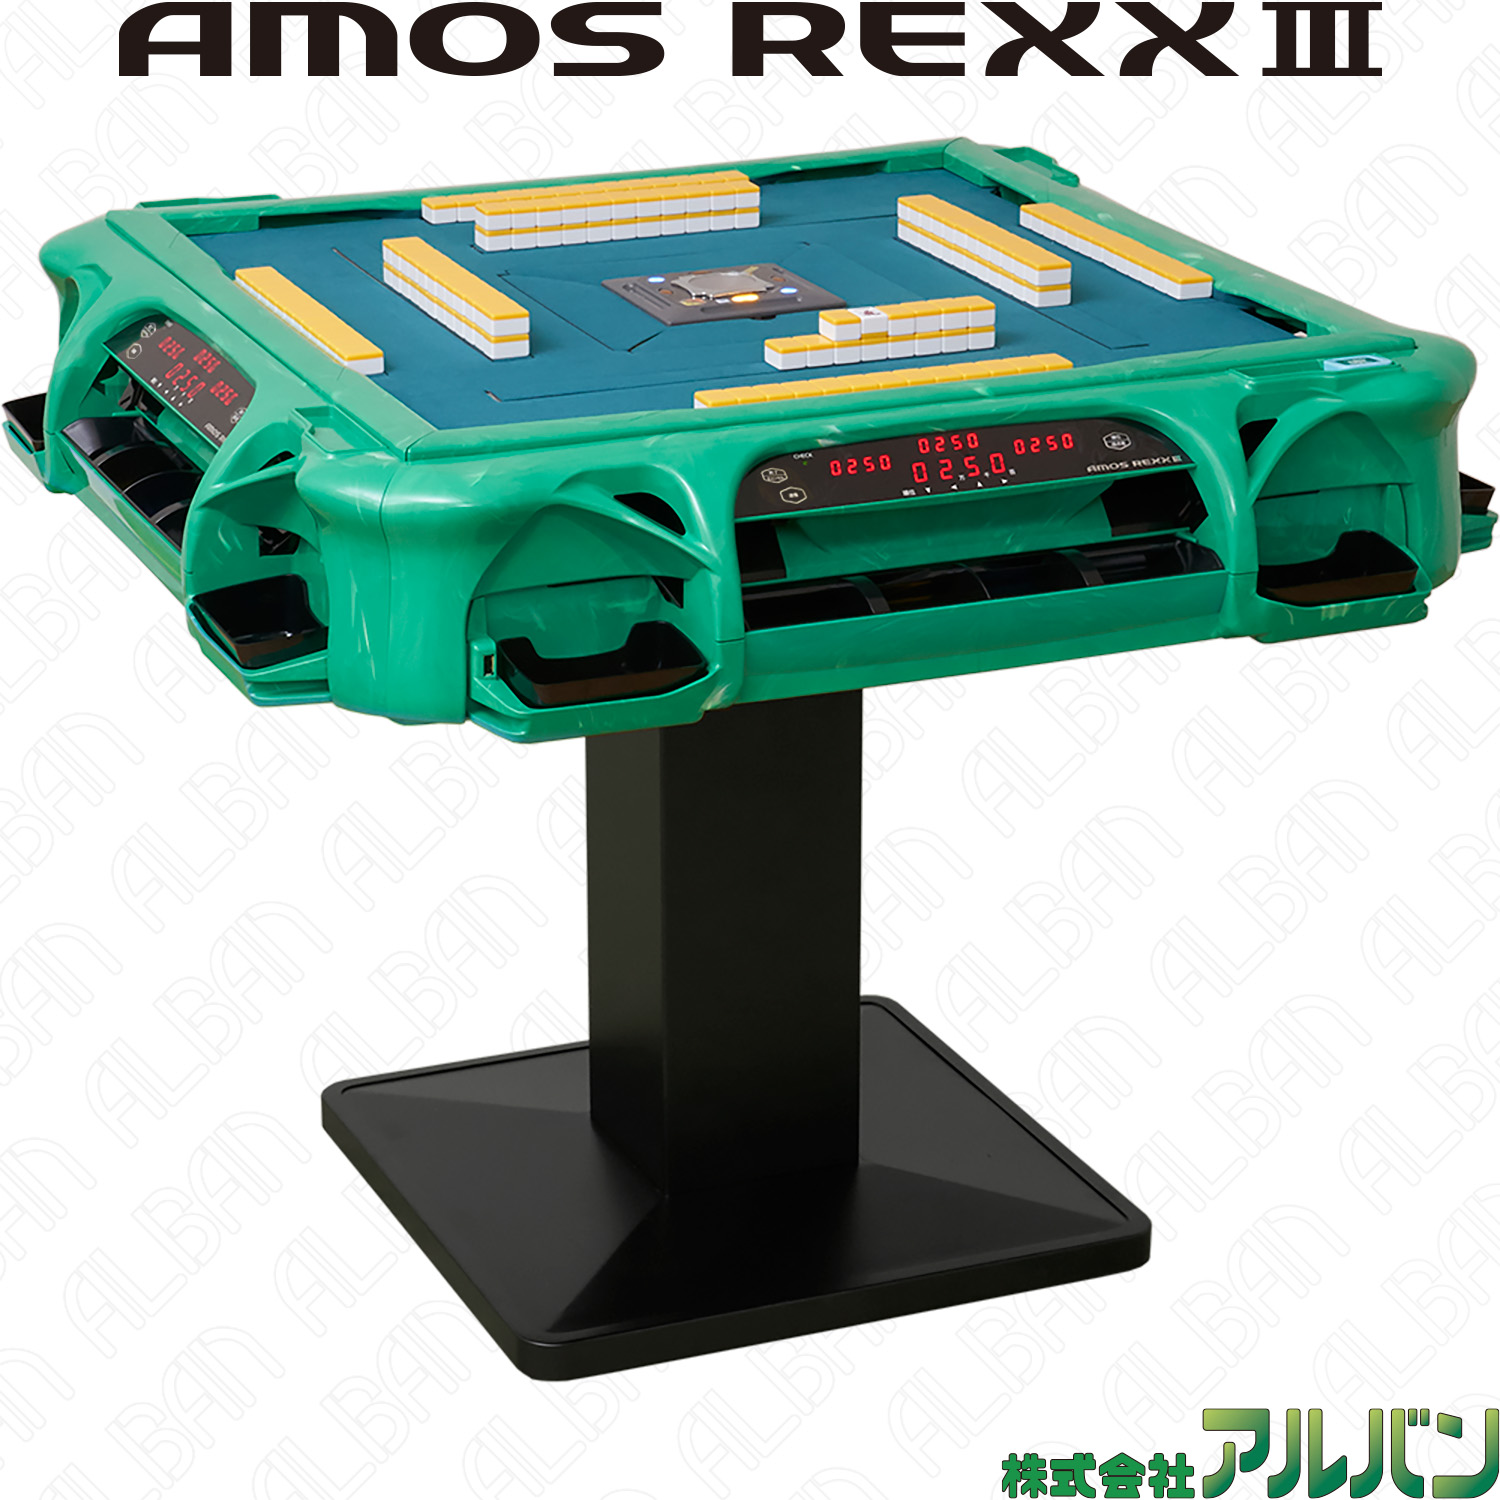 業務用全自動麻雀卓「アモスレックス3 / AMOS REXX Ⅲ」【グリーン 